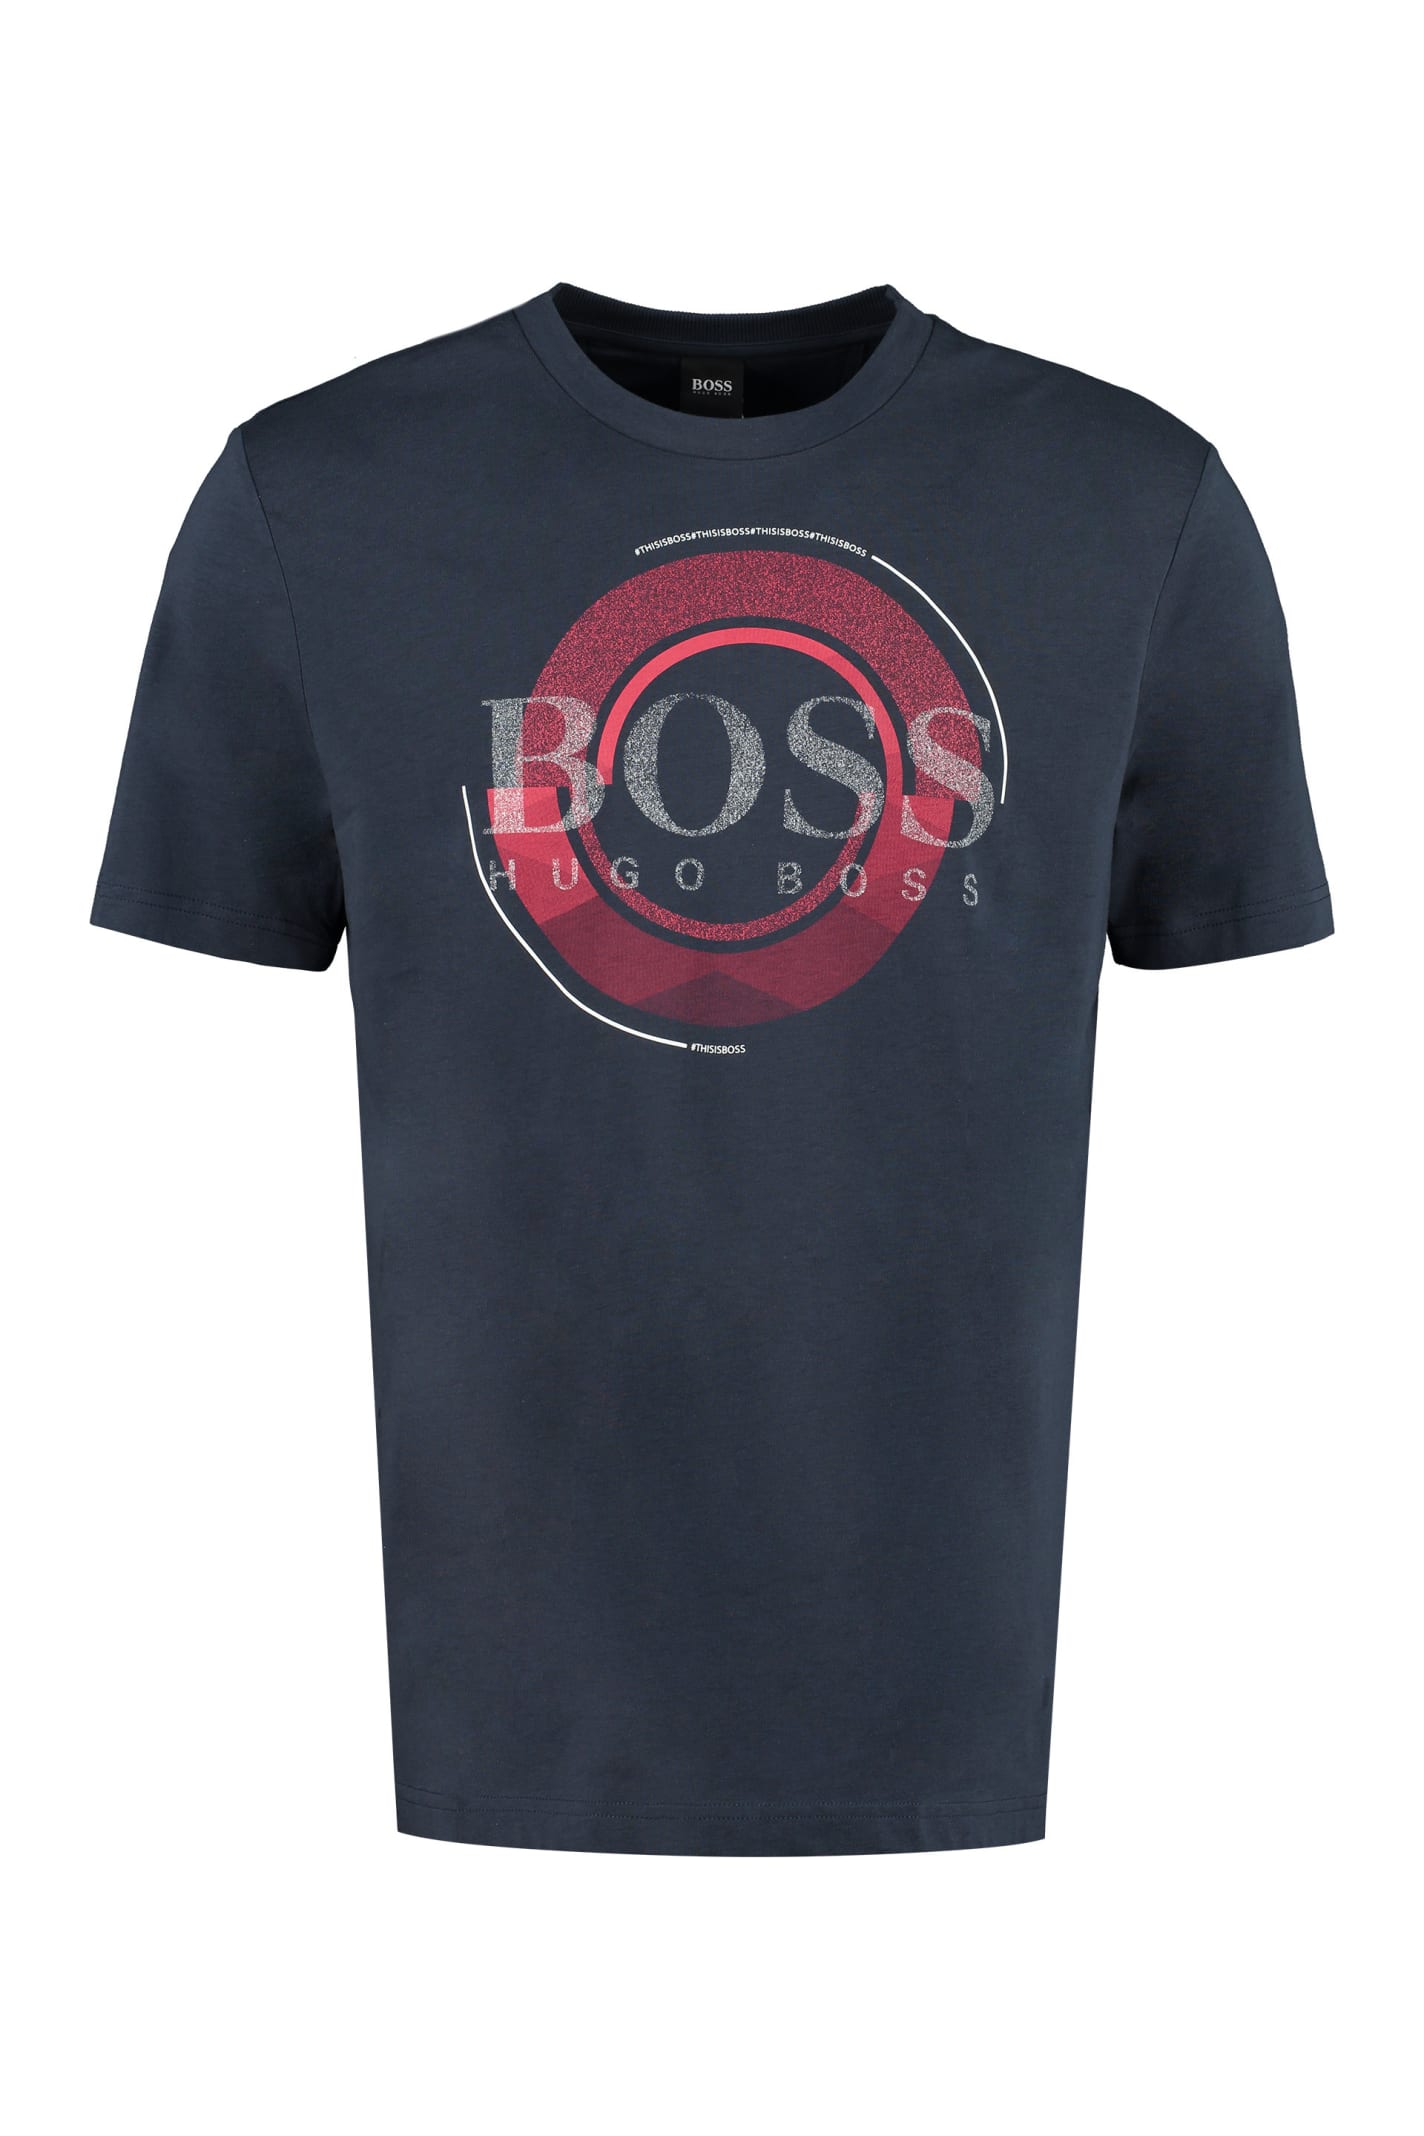 Hugo Boss Cotton Blend Crew-neck T-shirt